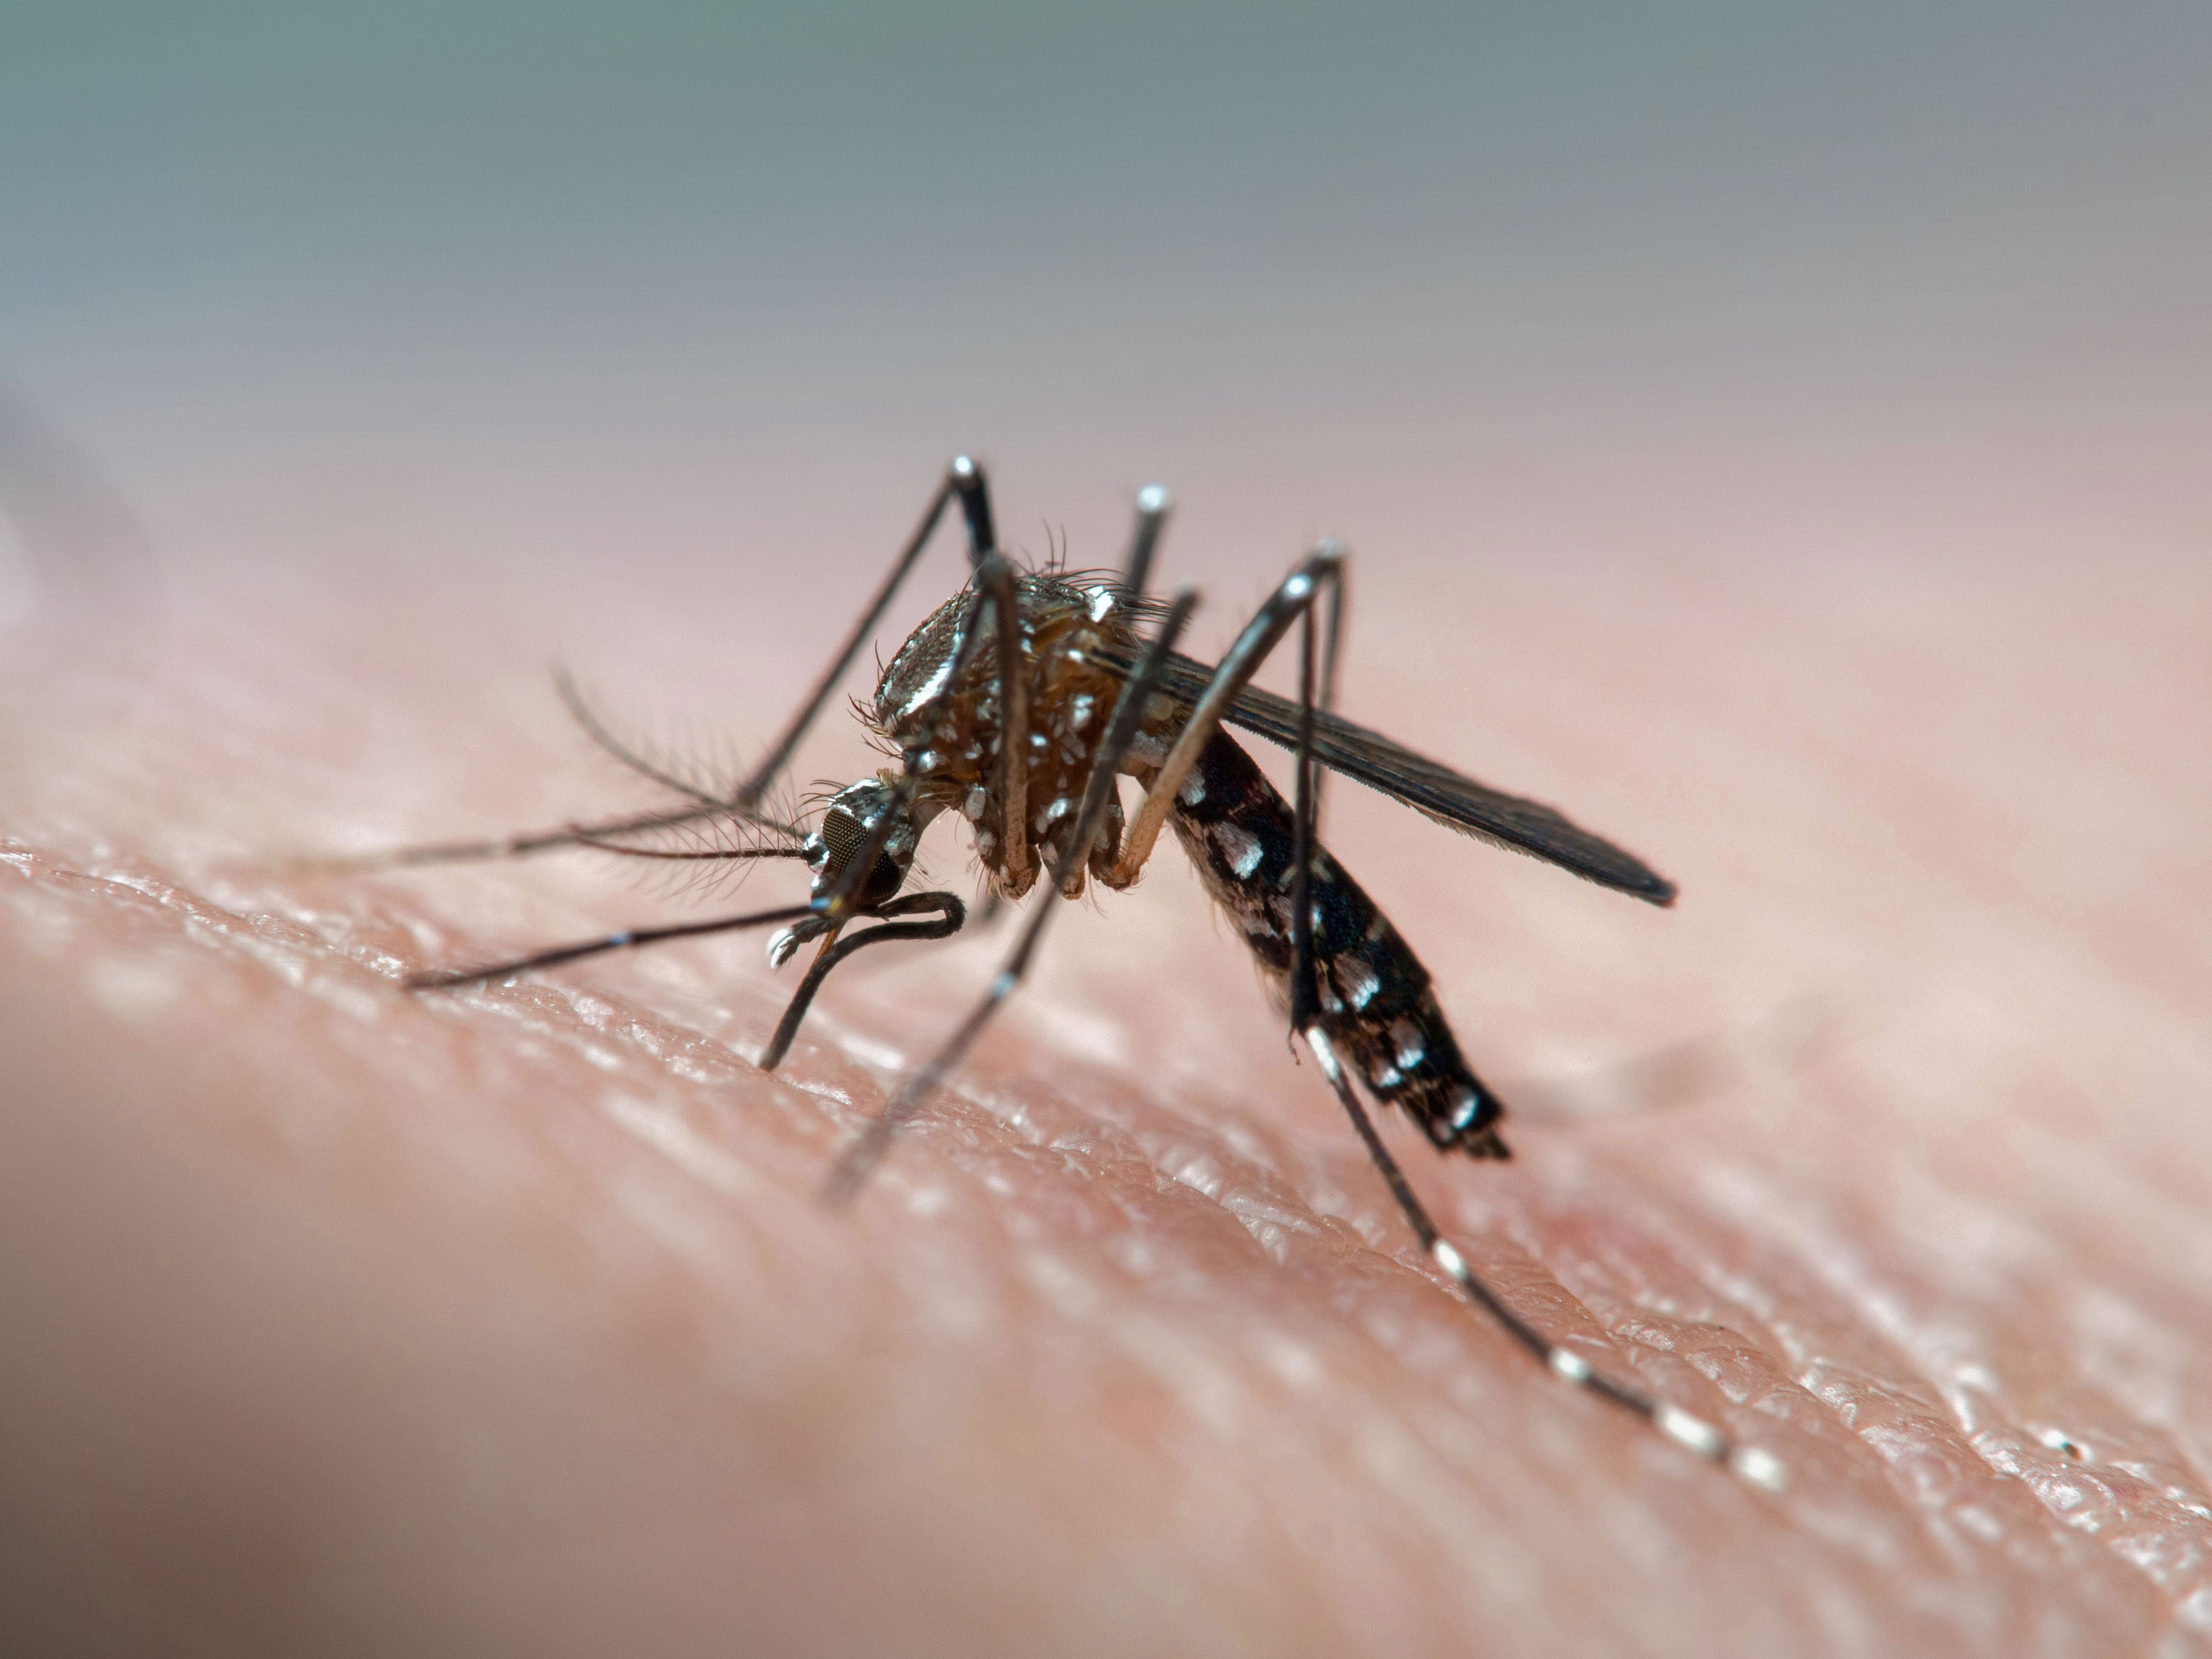 ministerio de salud reporta 135 casos de dengue en el país: todos los casos son importados